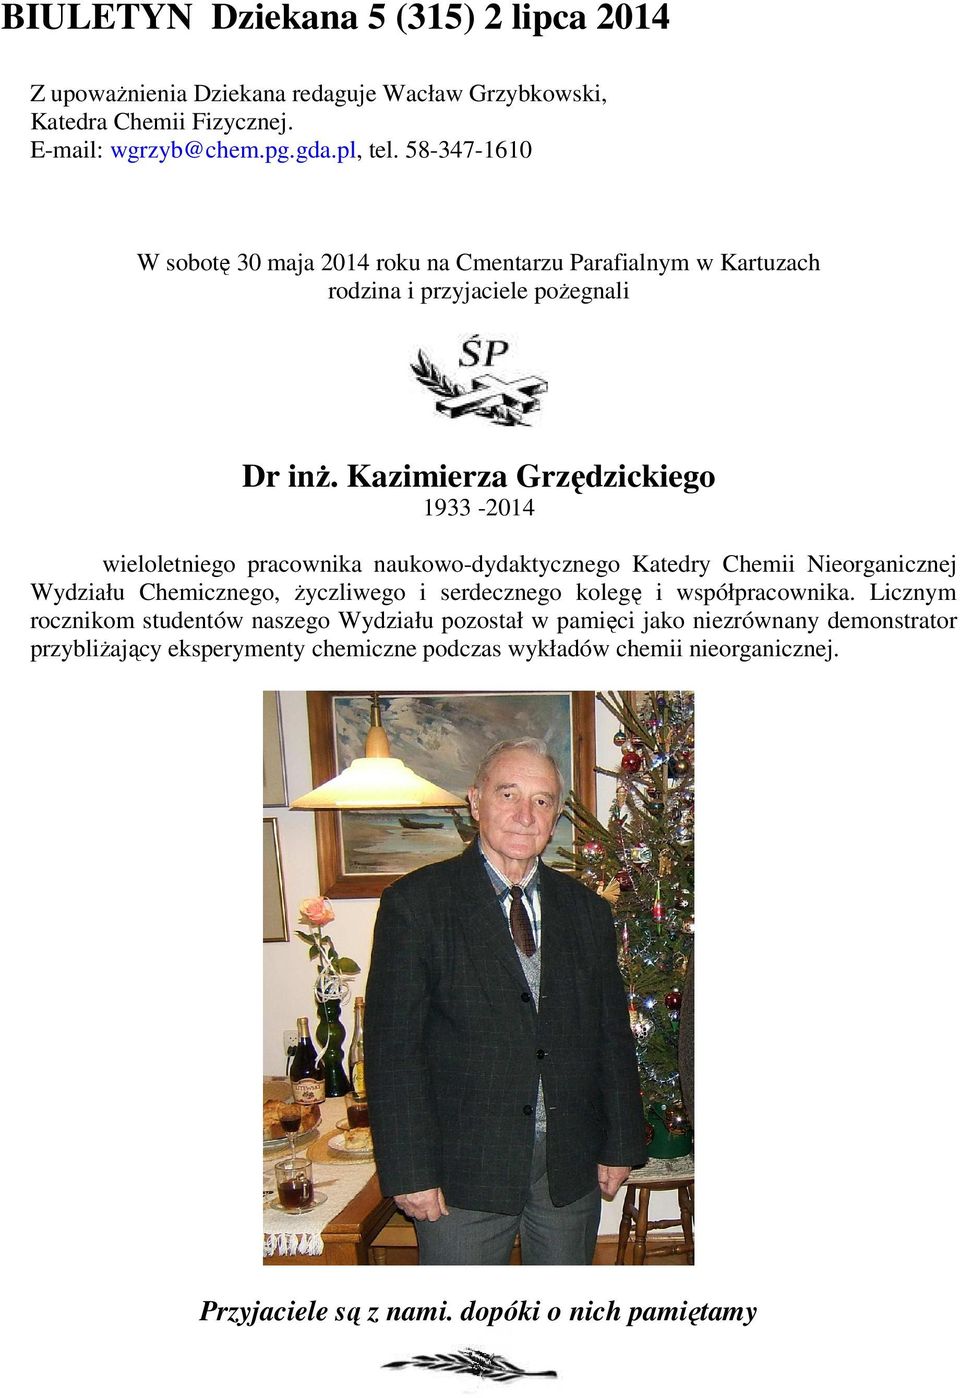 Kazimierza Grzędzickiego 1933-2014 wieloletniego pracownika naukowo-dydaktycznego Katedry Chemii Nieorganicznej Wydziału Chemicznego, życzliwego i serdecznego kolegę i